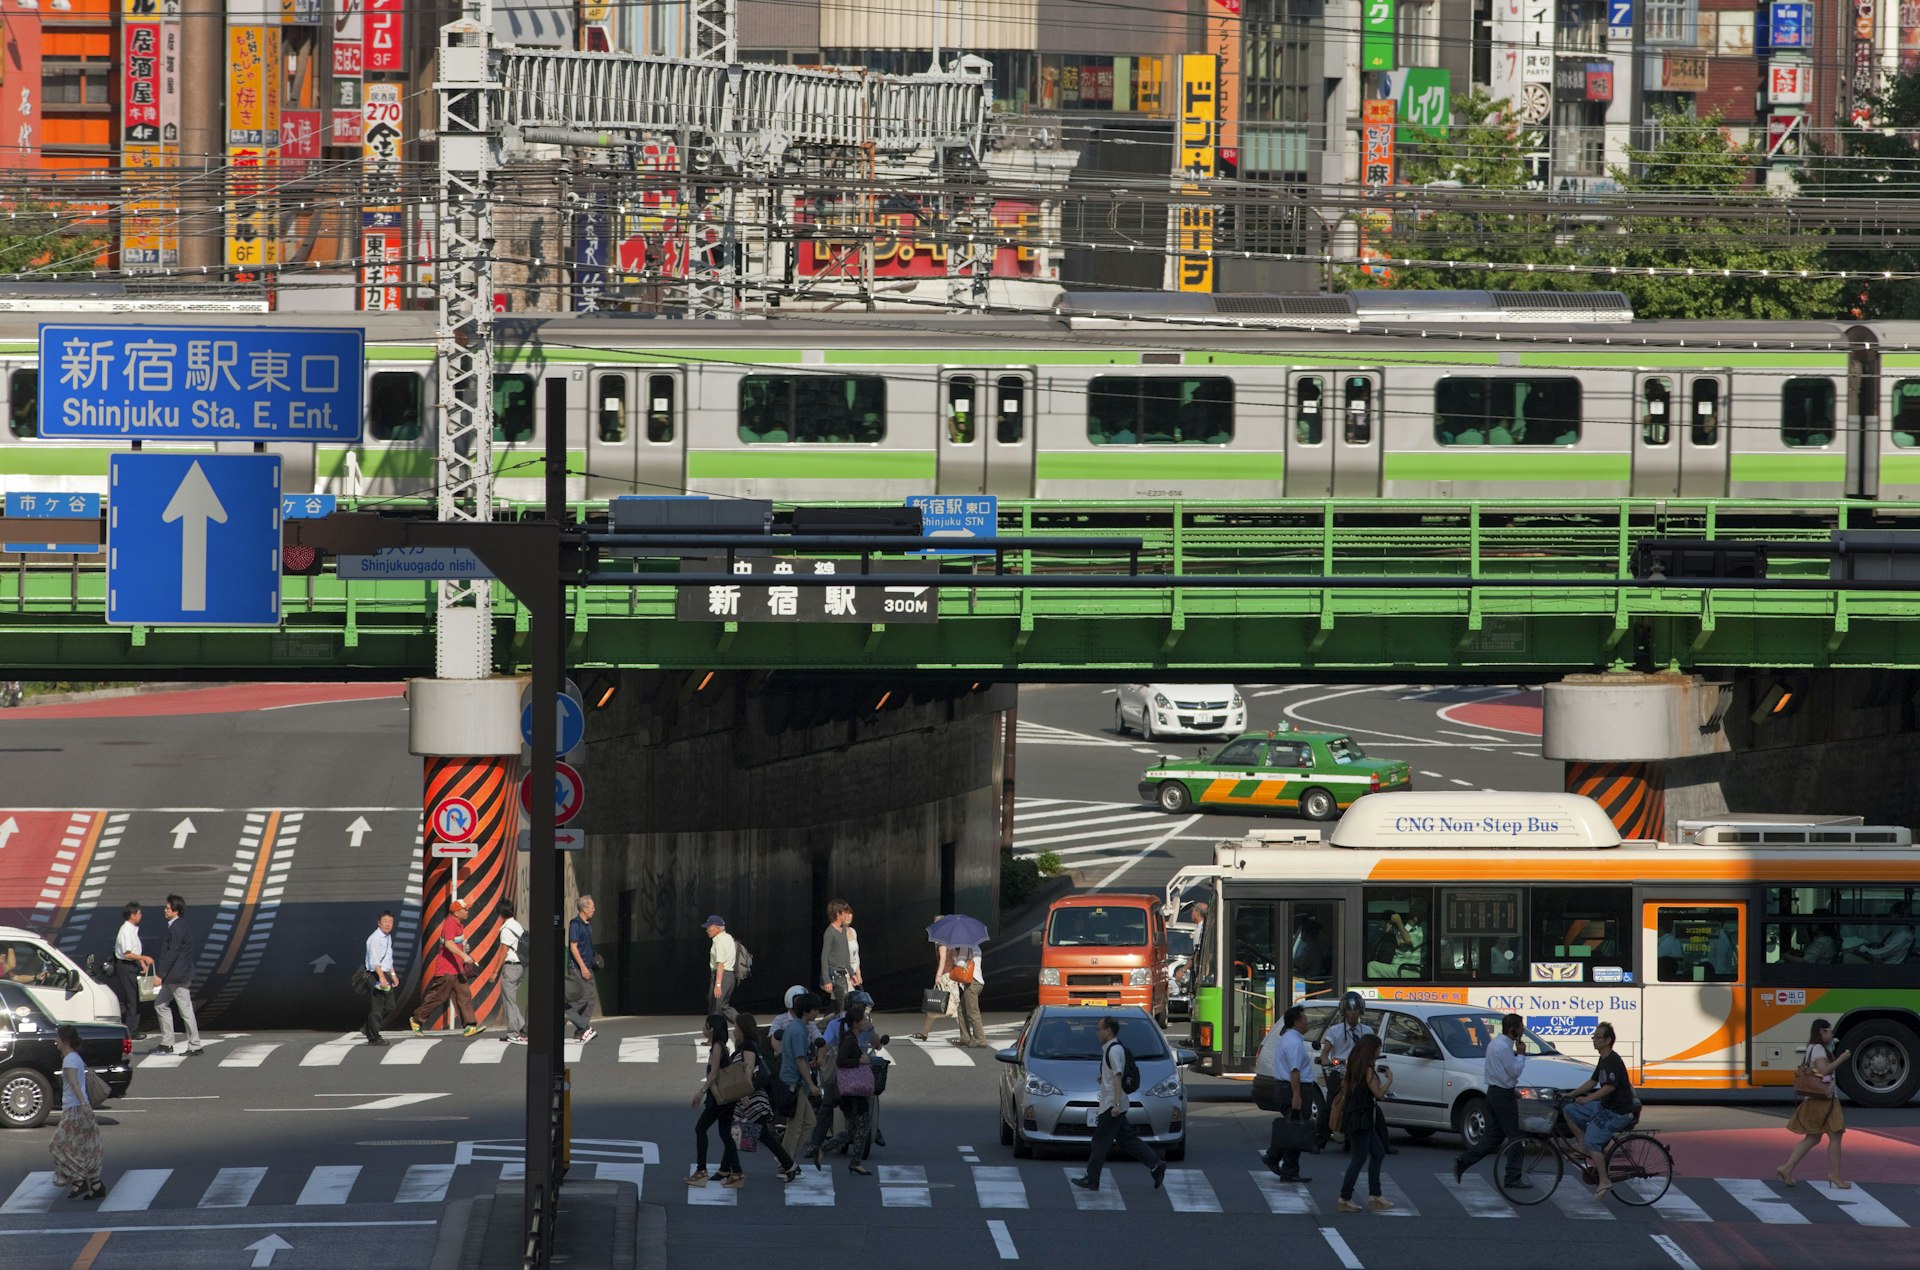 A Yamanote Line train at Shinjuku Station in Tokyo, Japan